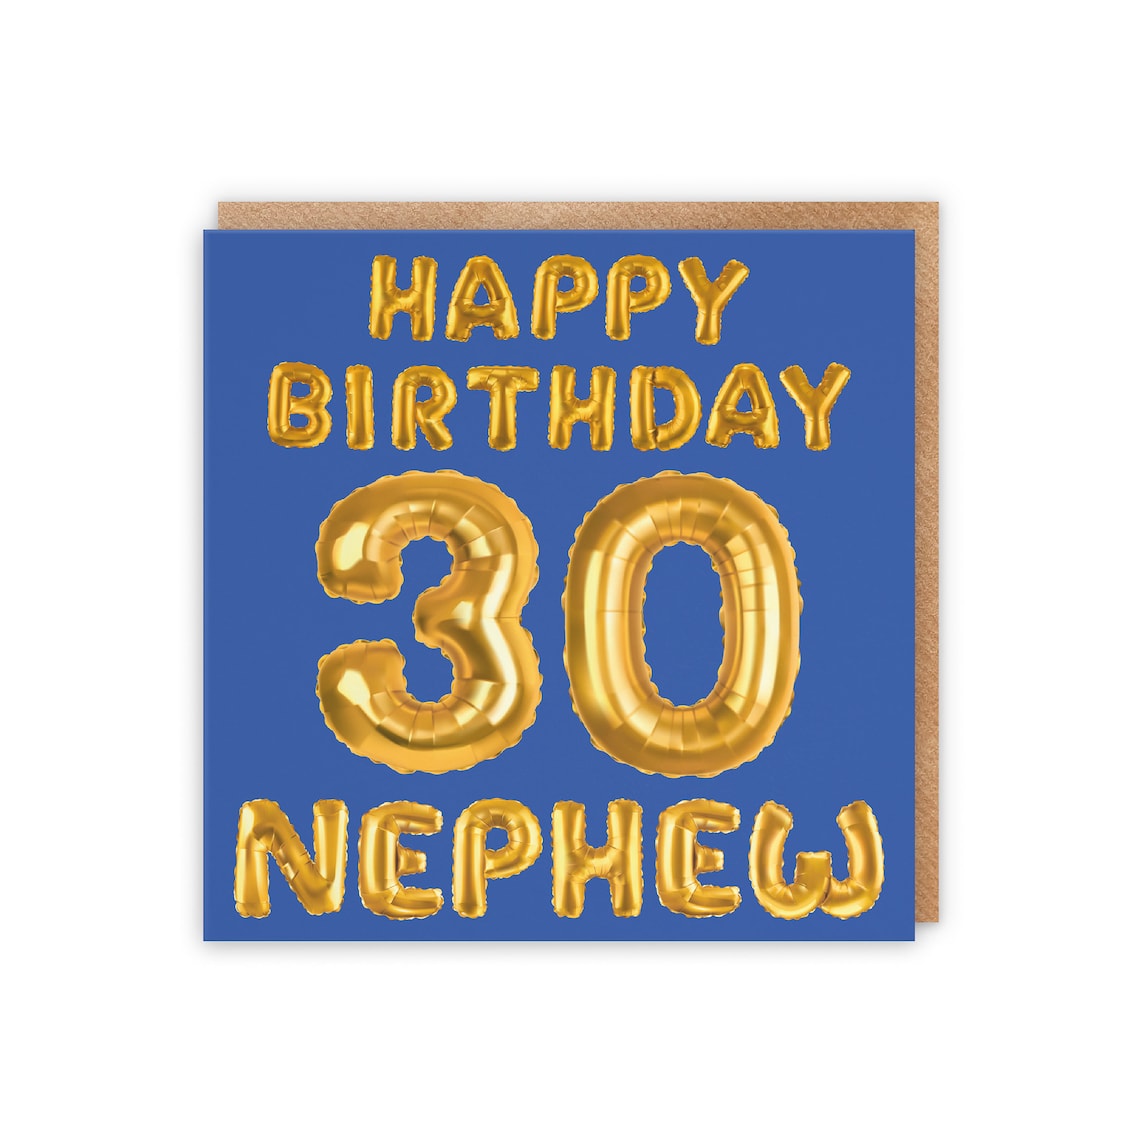 Nephew 30th Birthday Card Happy Birthday 30 Nephew | Etsy